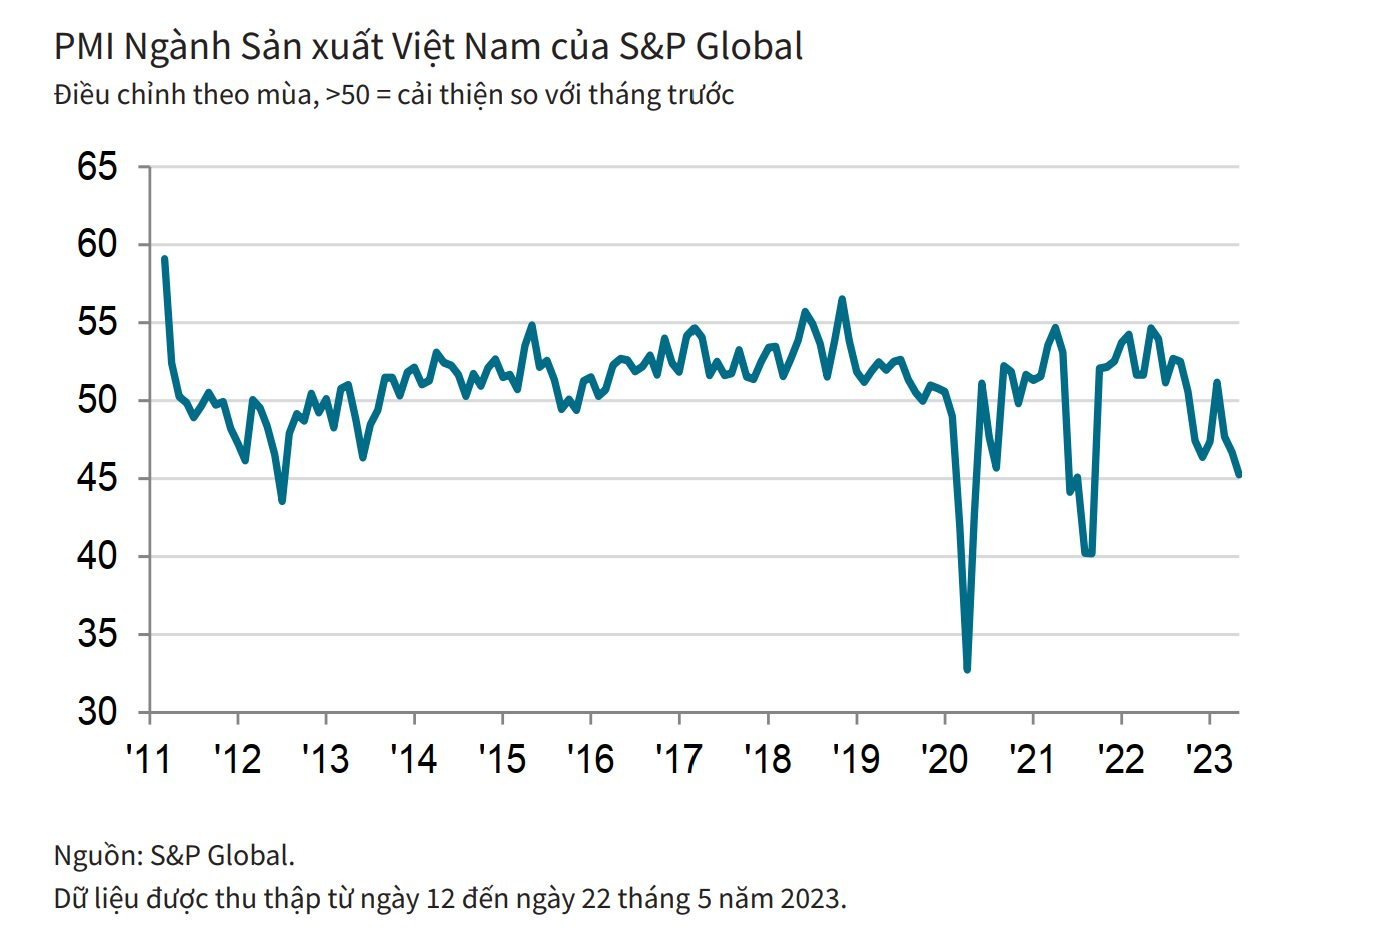 Tháng 5, PMI Việt Nam tiếp tục giảm còn 45,3 điểm - Ảnh 2.